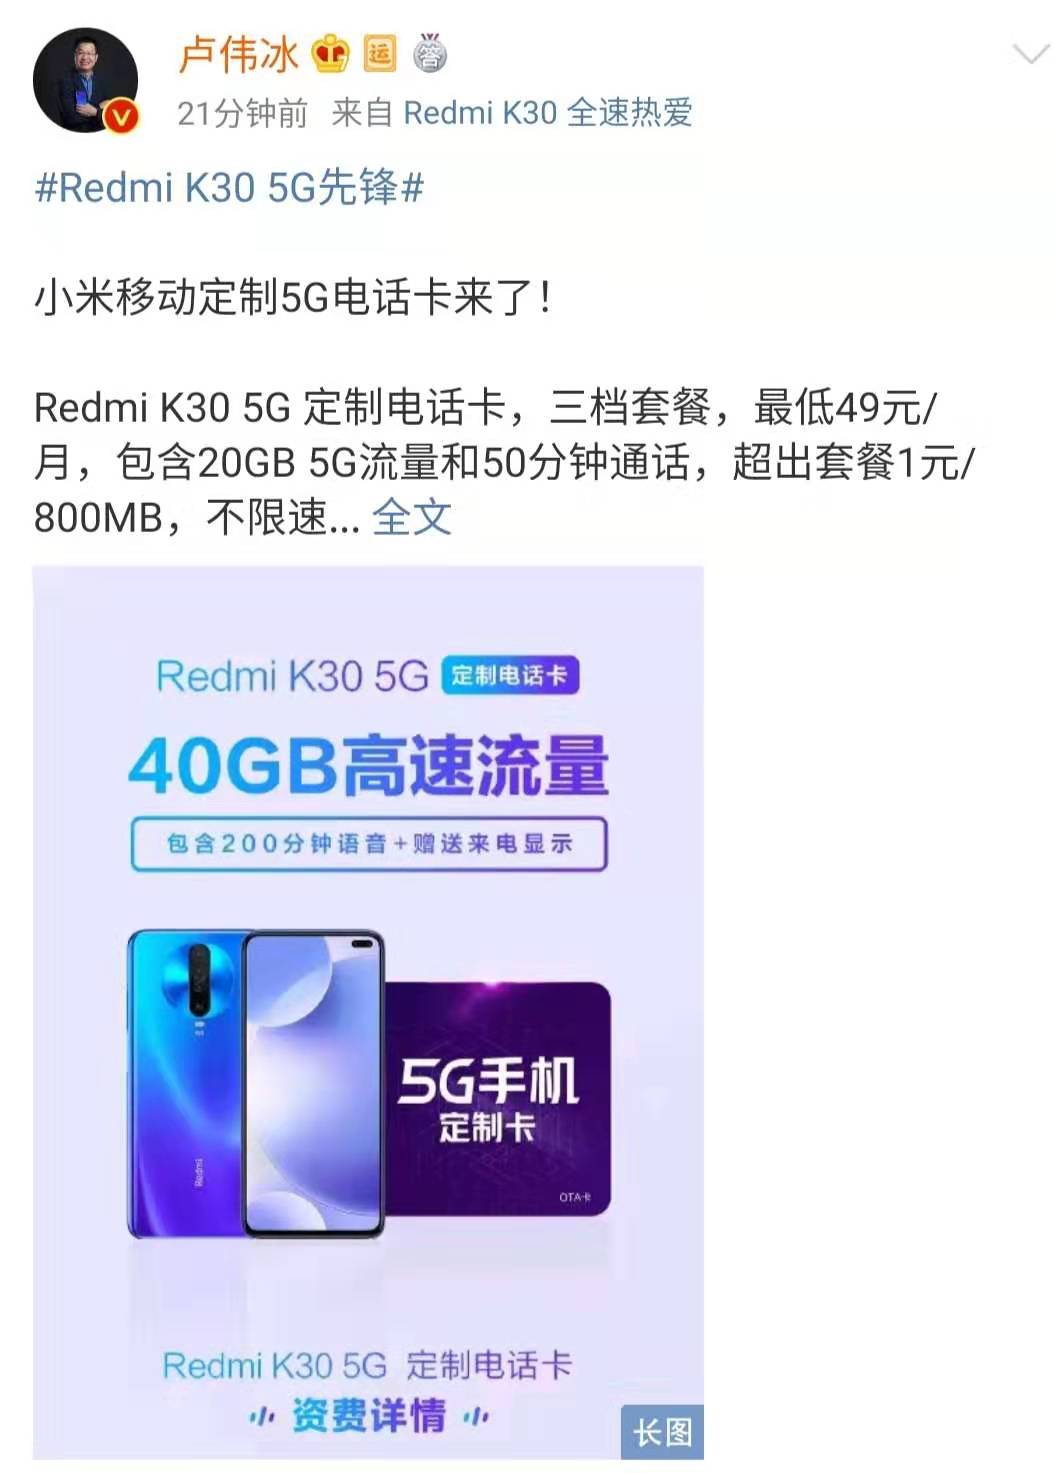 小米移动发布Redmi K30 5G手机上订制卡 最少49元包20GB总流量